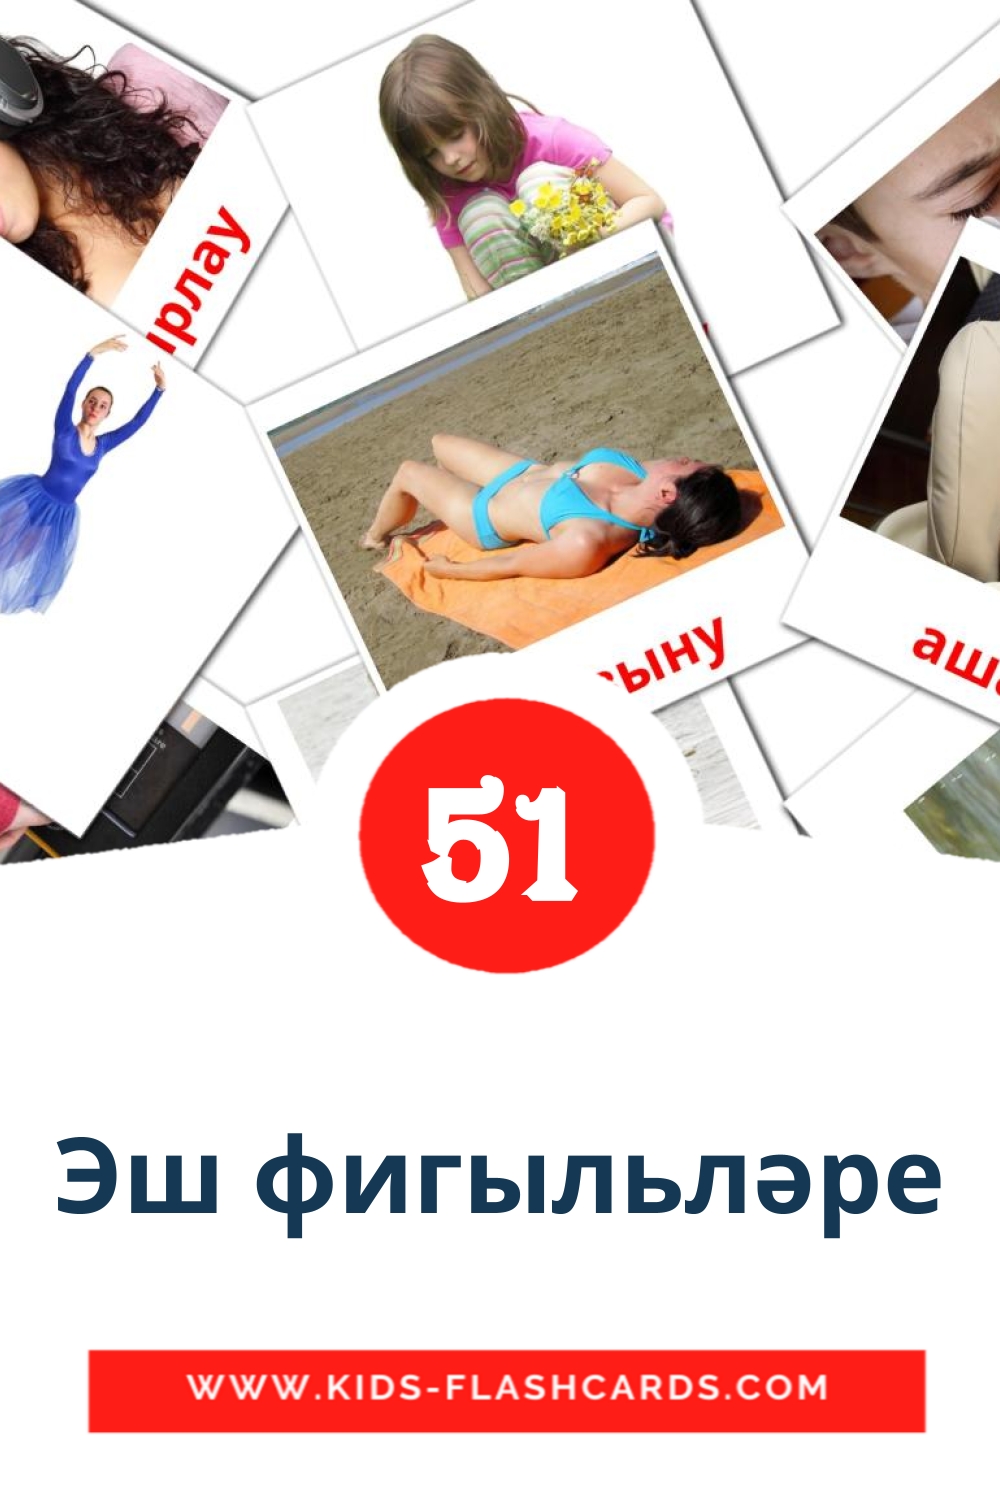 51 Эш фигыльләре Bildkarten für den Kindergarten auf Tatar